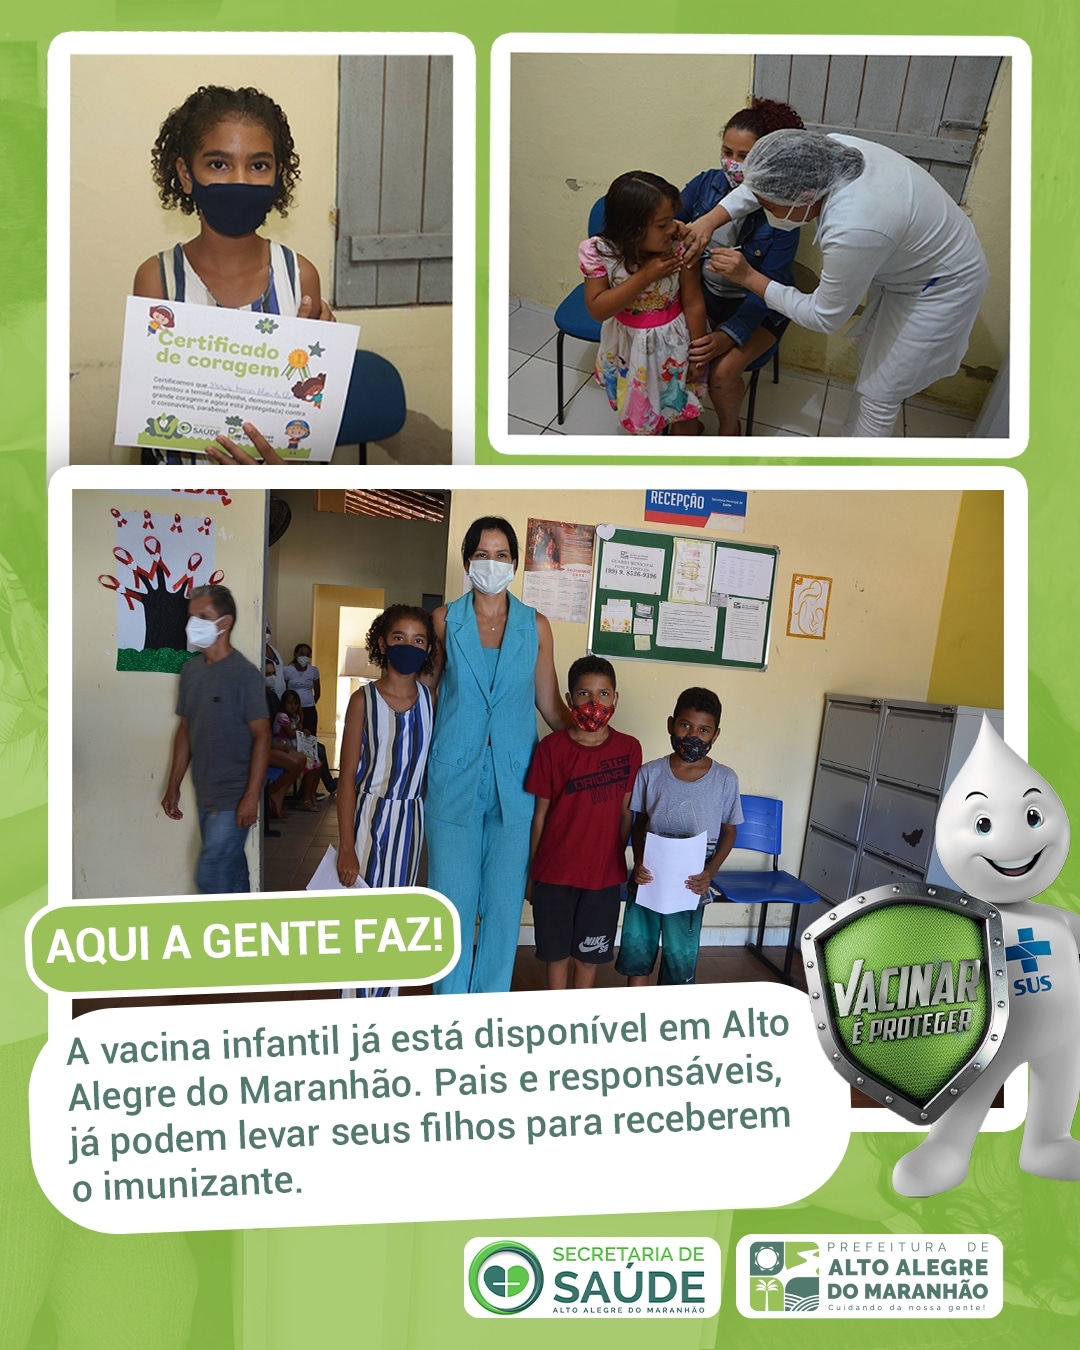 A vacina infantil já está disponível em Alto Alegre do Maranhão